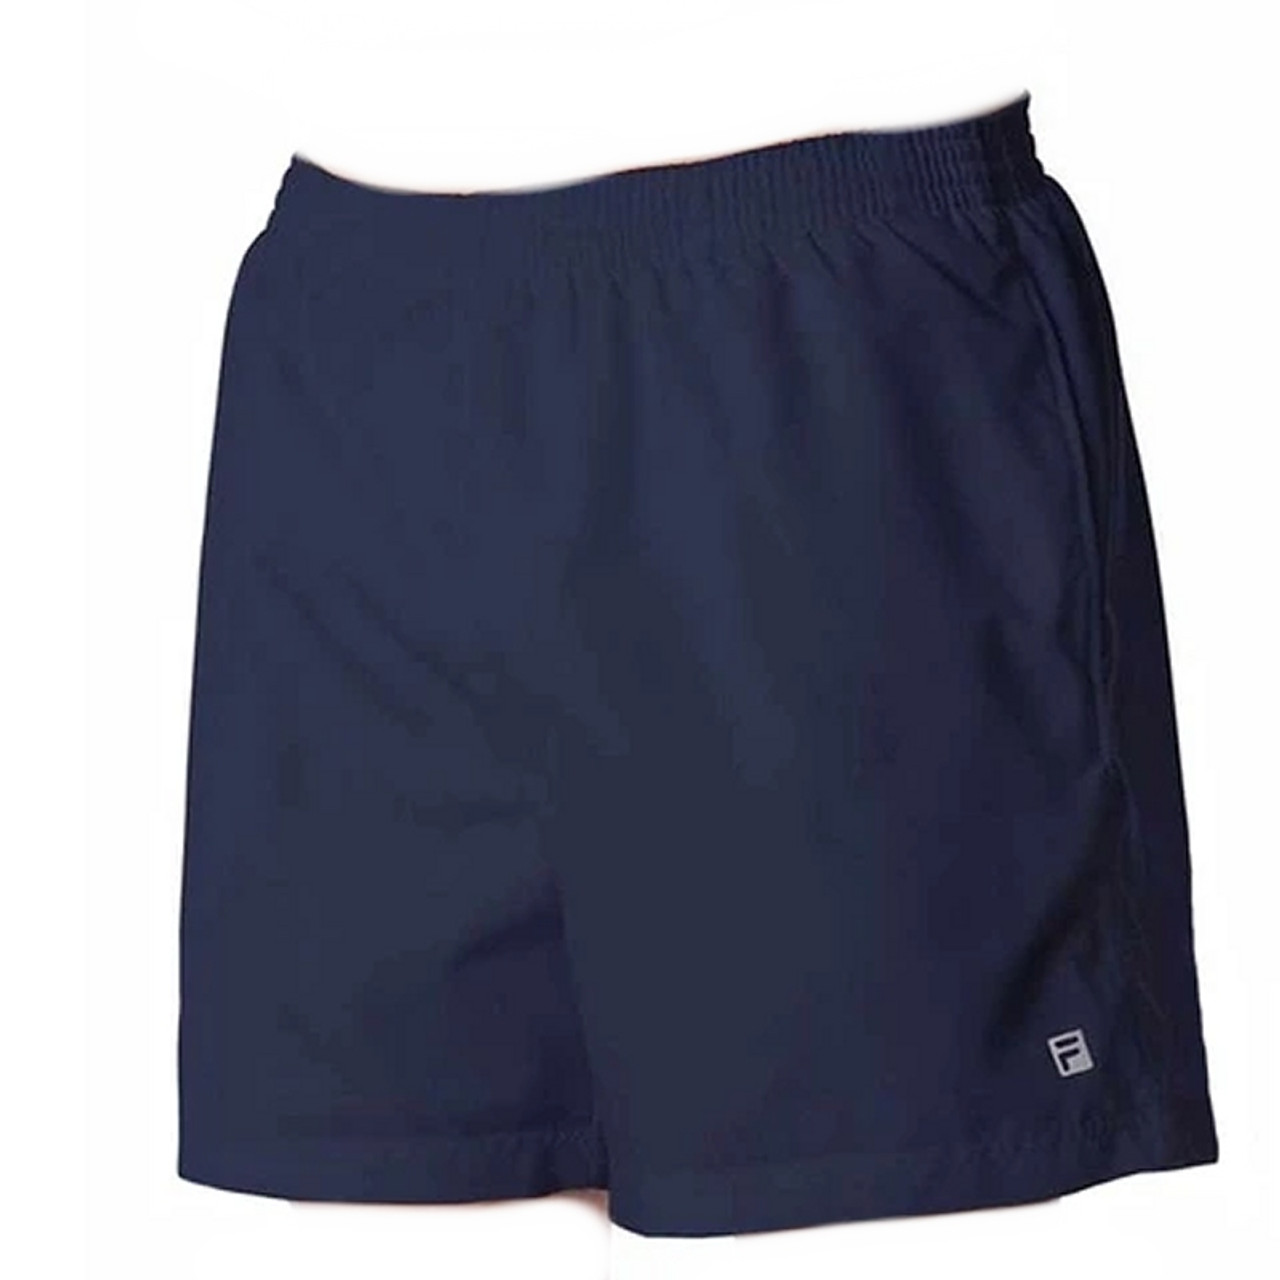 Fila Fundamental 5 inch Men's Court Short, Navy, Tennis Short